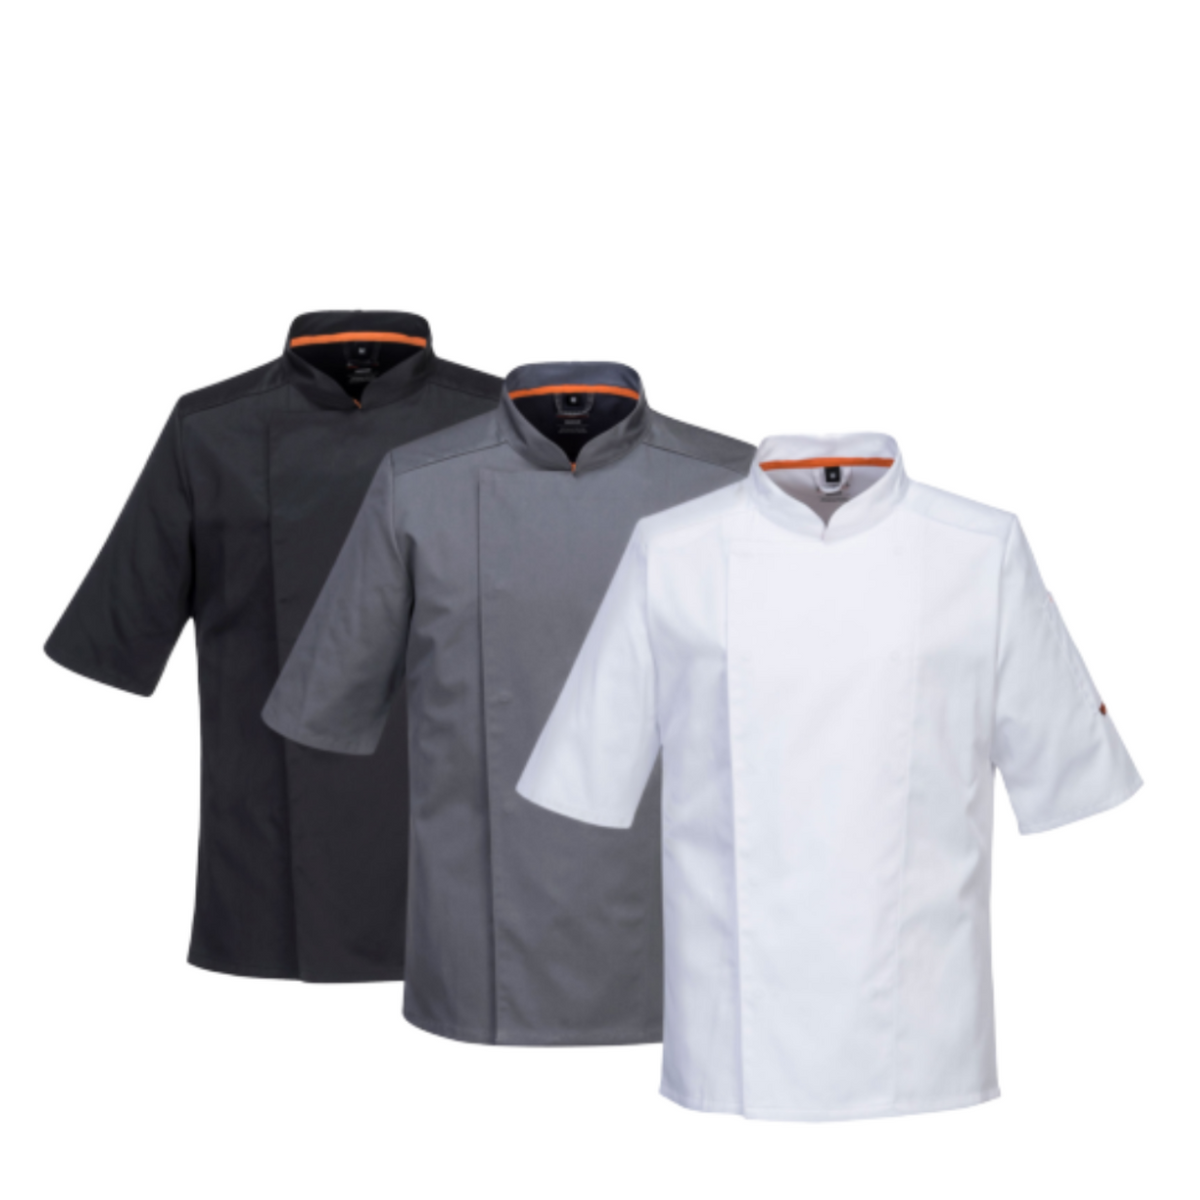 Portwest Mens MeshAir Pro Chefs Jacket S/S Slim Fit Apron Durable Comfy C738-Collins Clothing Co